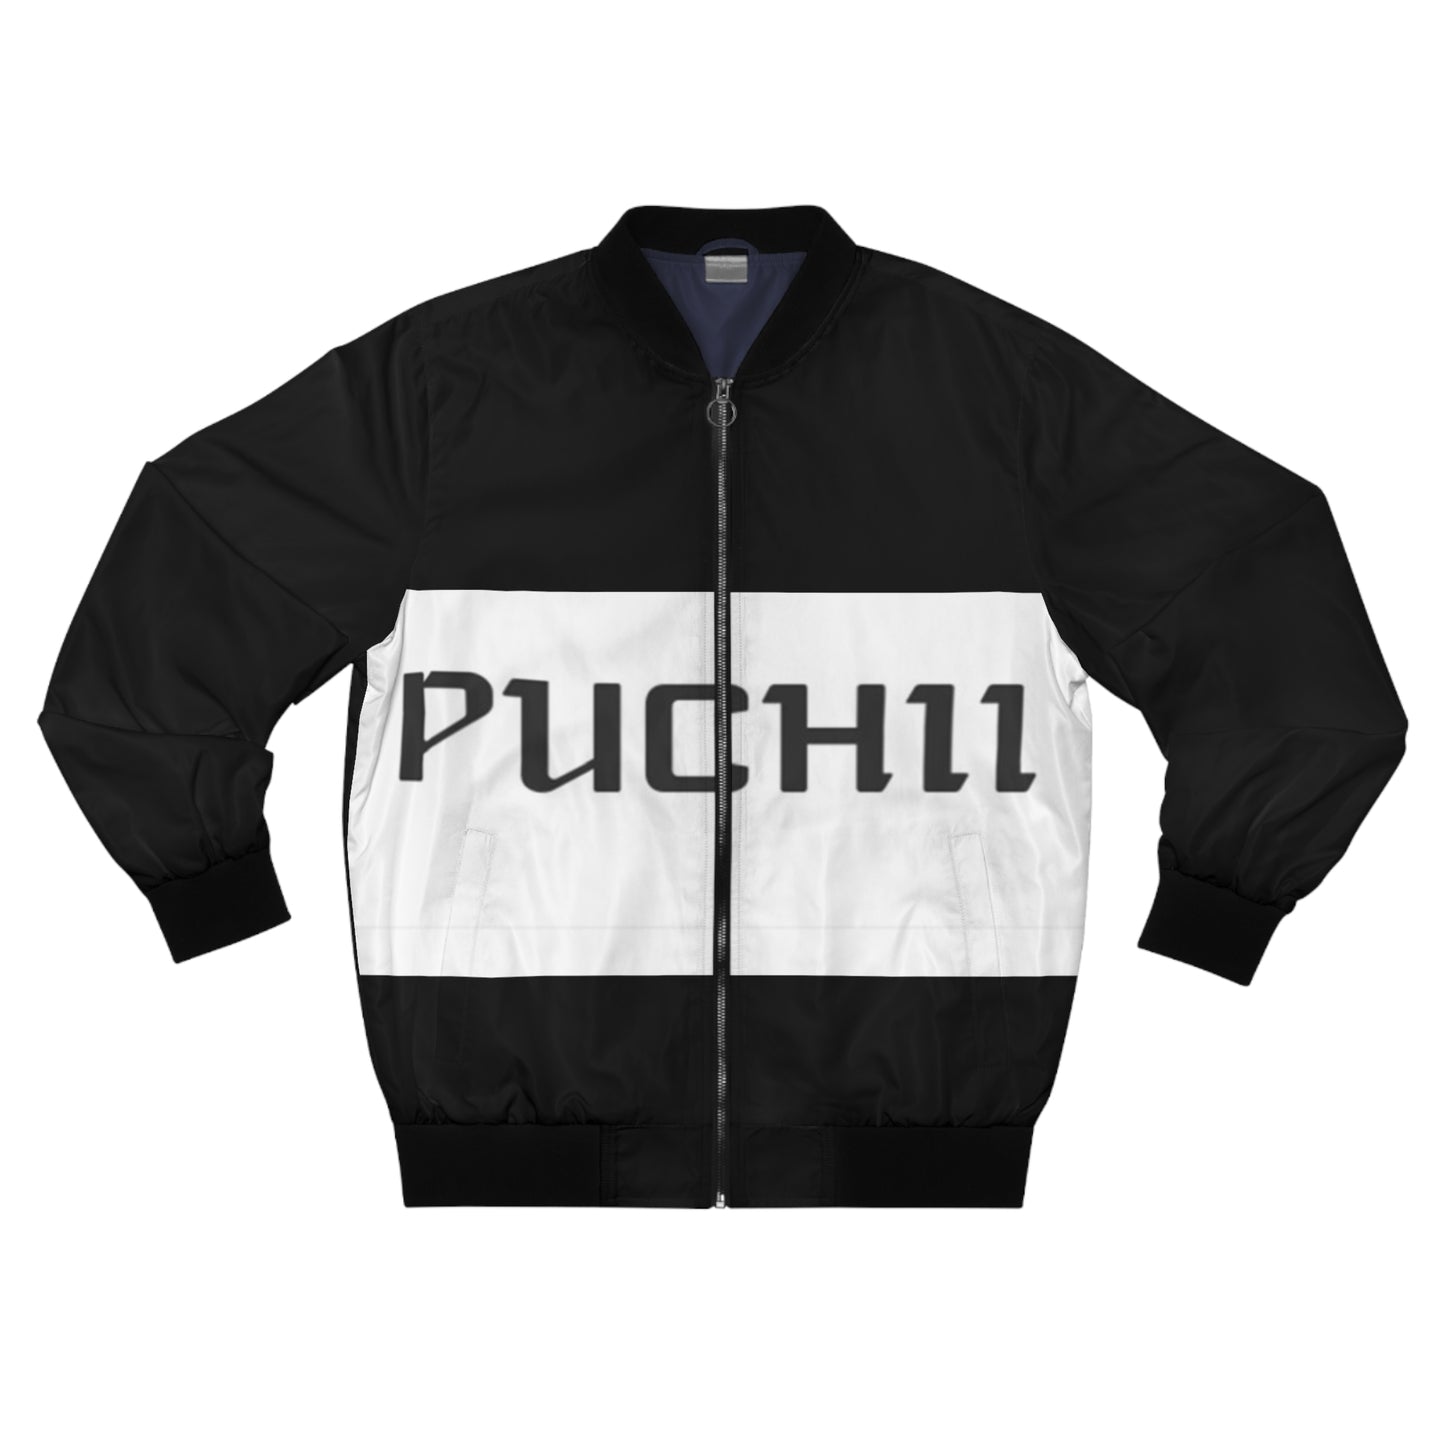 Puchii Bomber Jacket